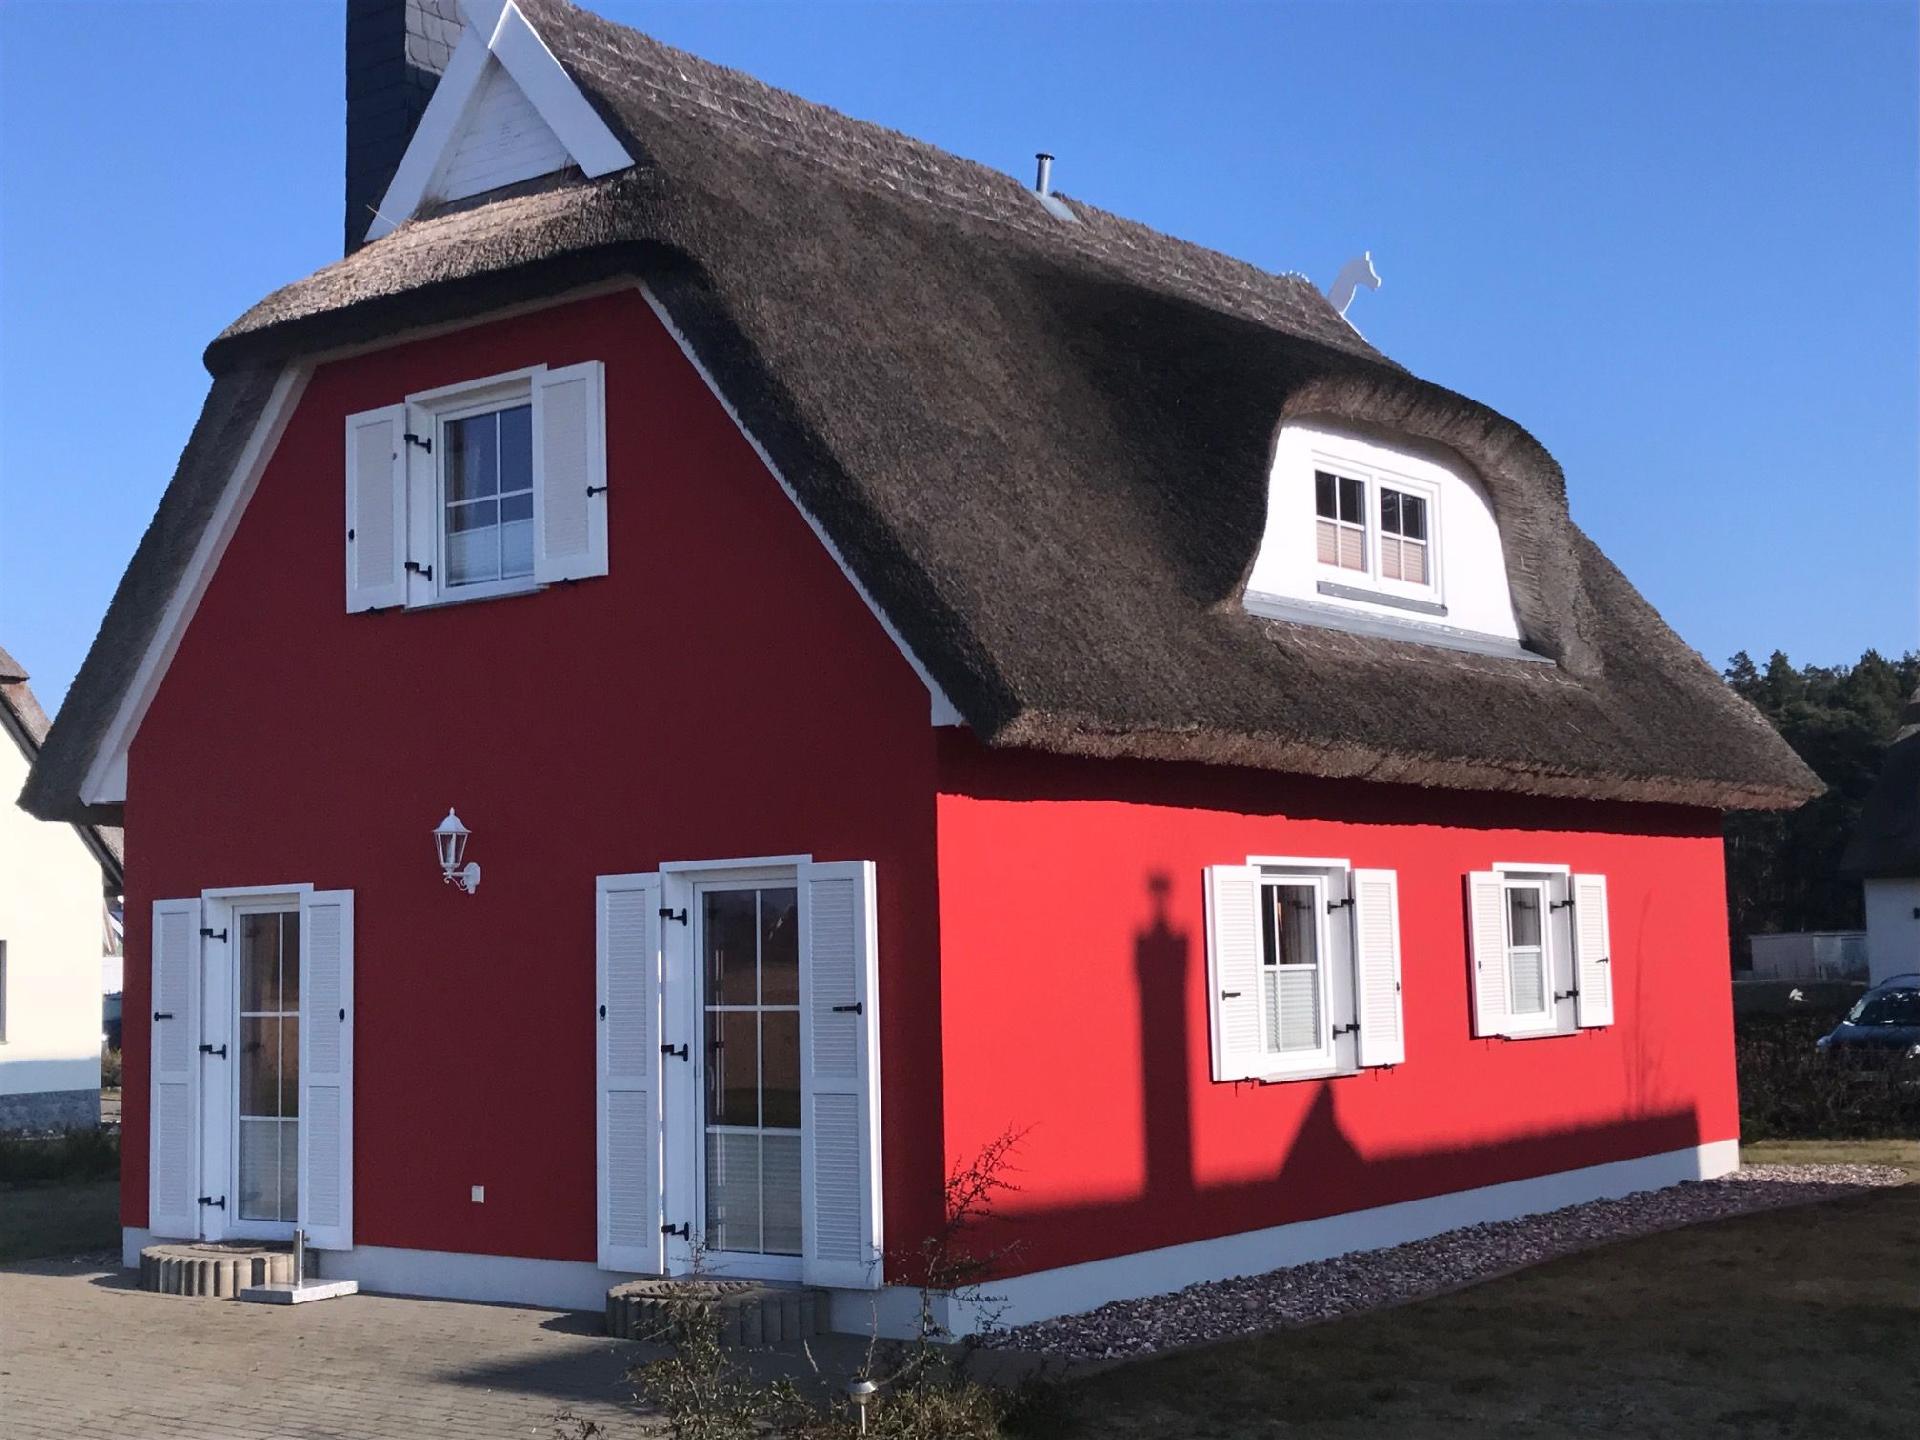 Ferienhaus in Juliusruh mit Offenerem Garten Ferienhaus  Ostseeinseln